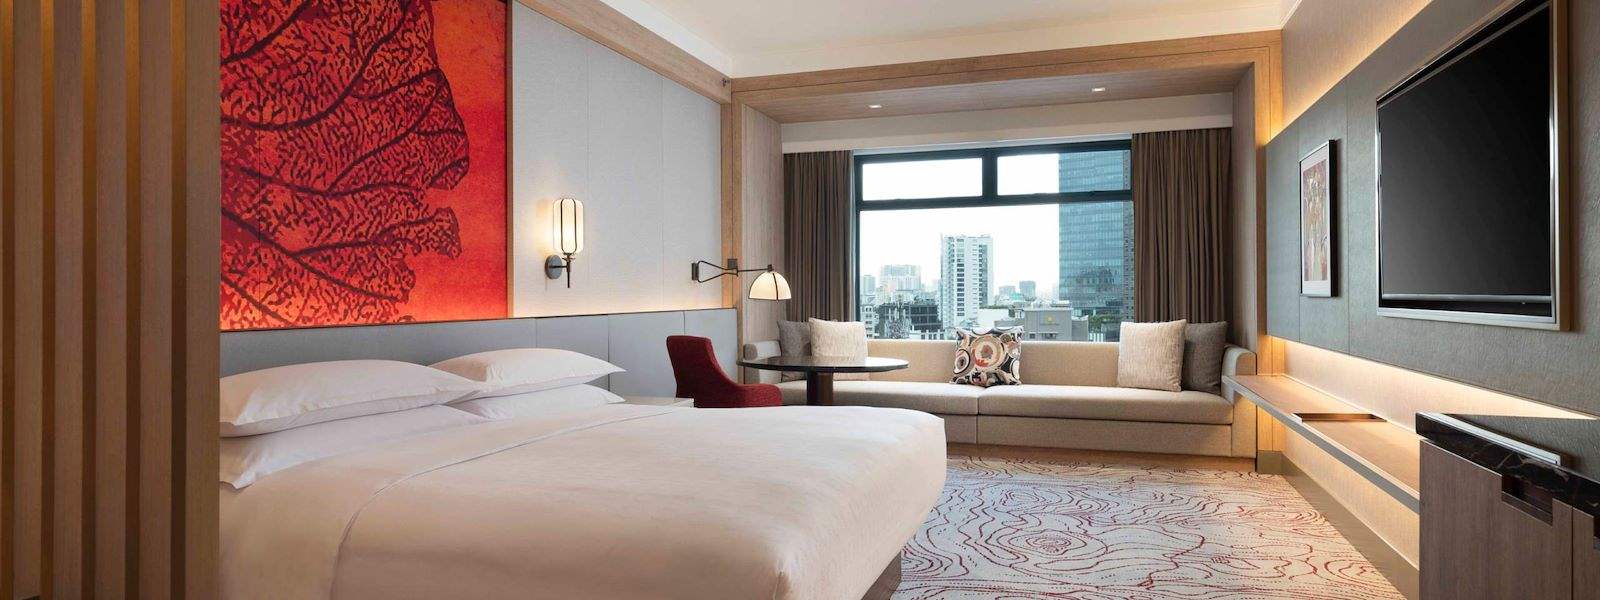 Tận hưởng kỳ nghỉ tuyệt vời nhất tại khách sạn 5 sao Sài Gòn, với những tiện nghi hiện đại, dịch vụ chuyên nghiệp và không gian sống đẳng cấp.